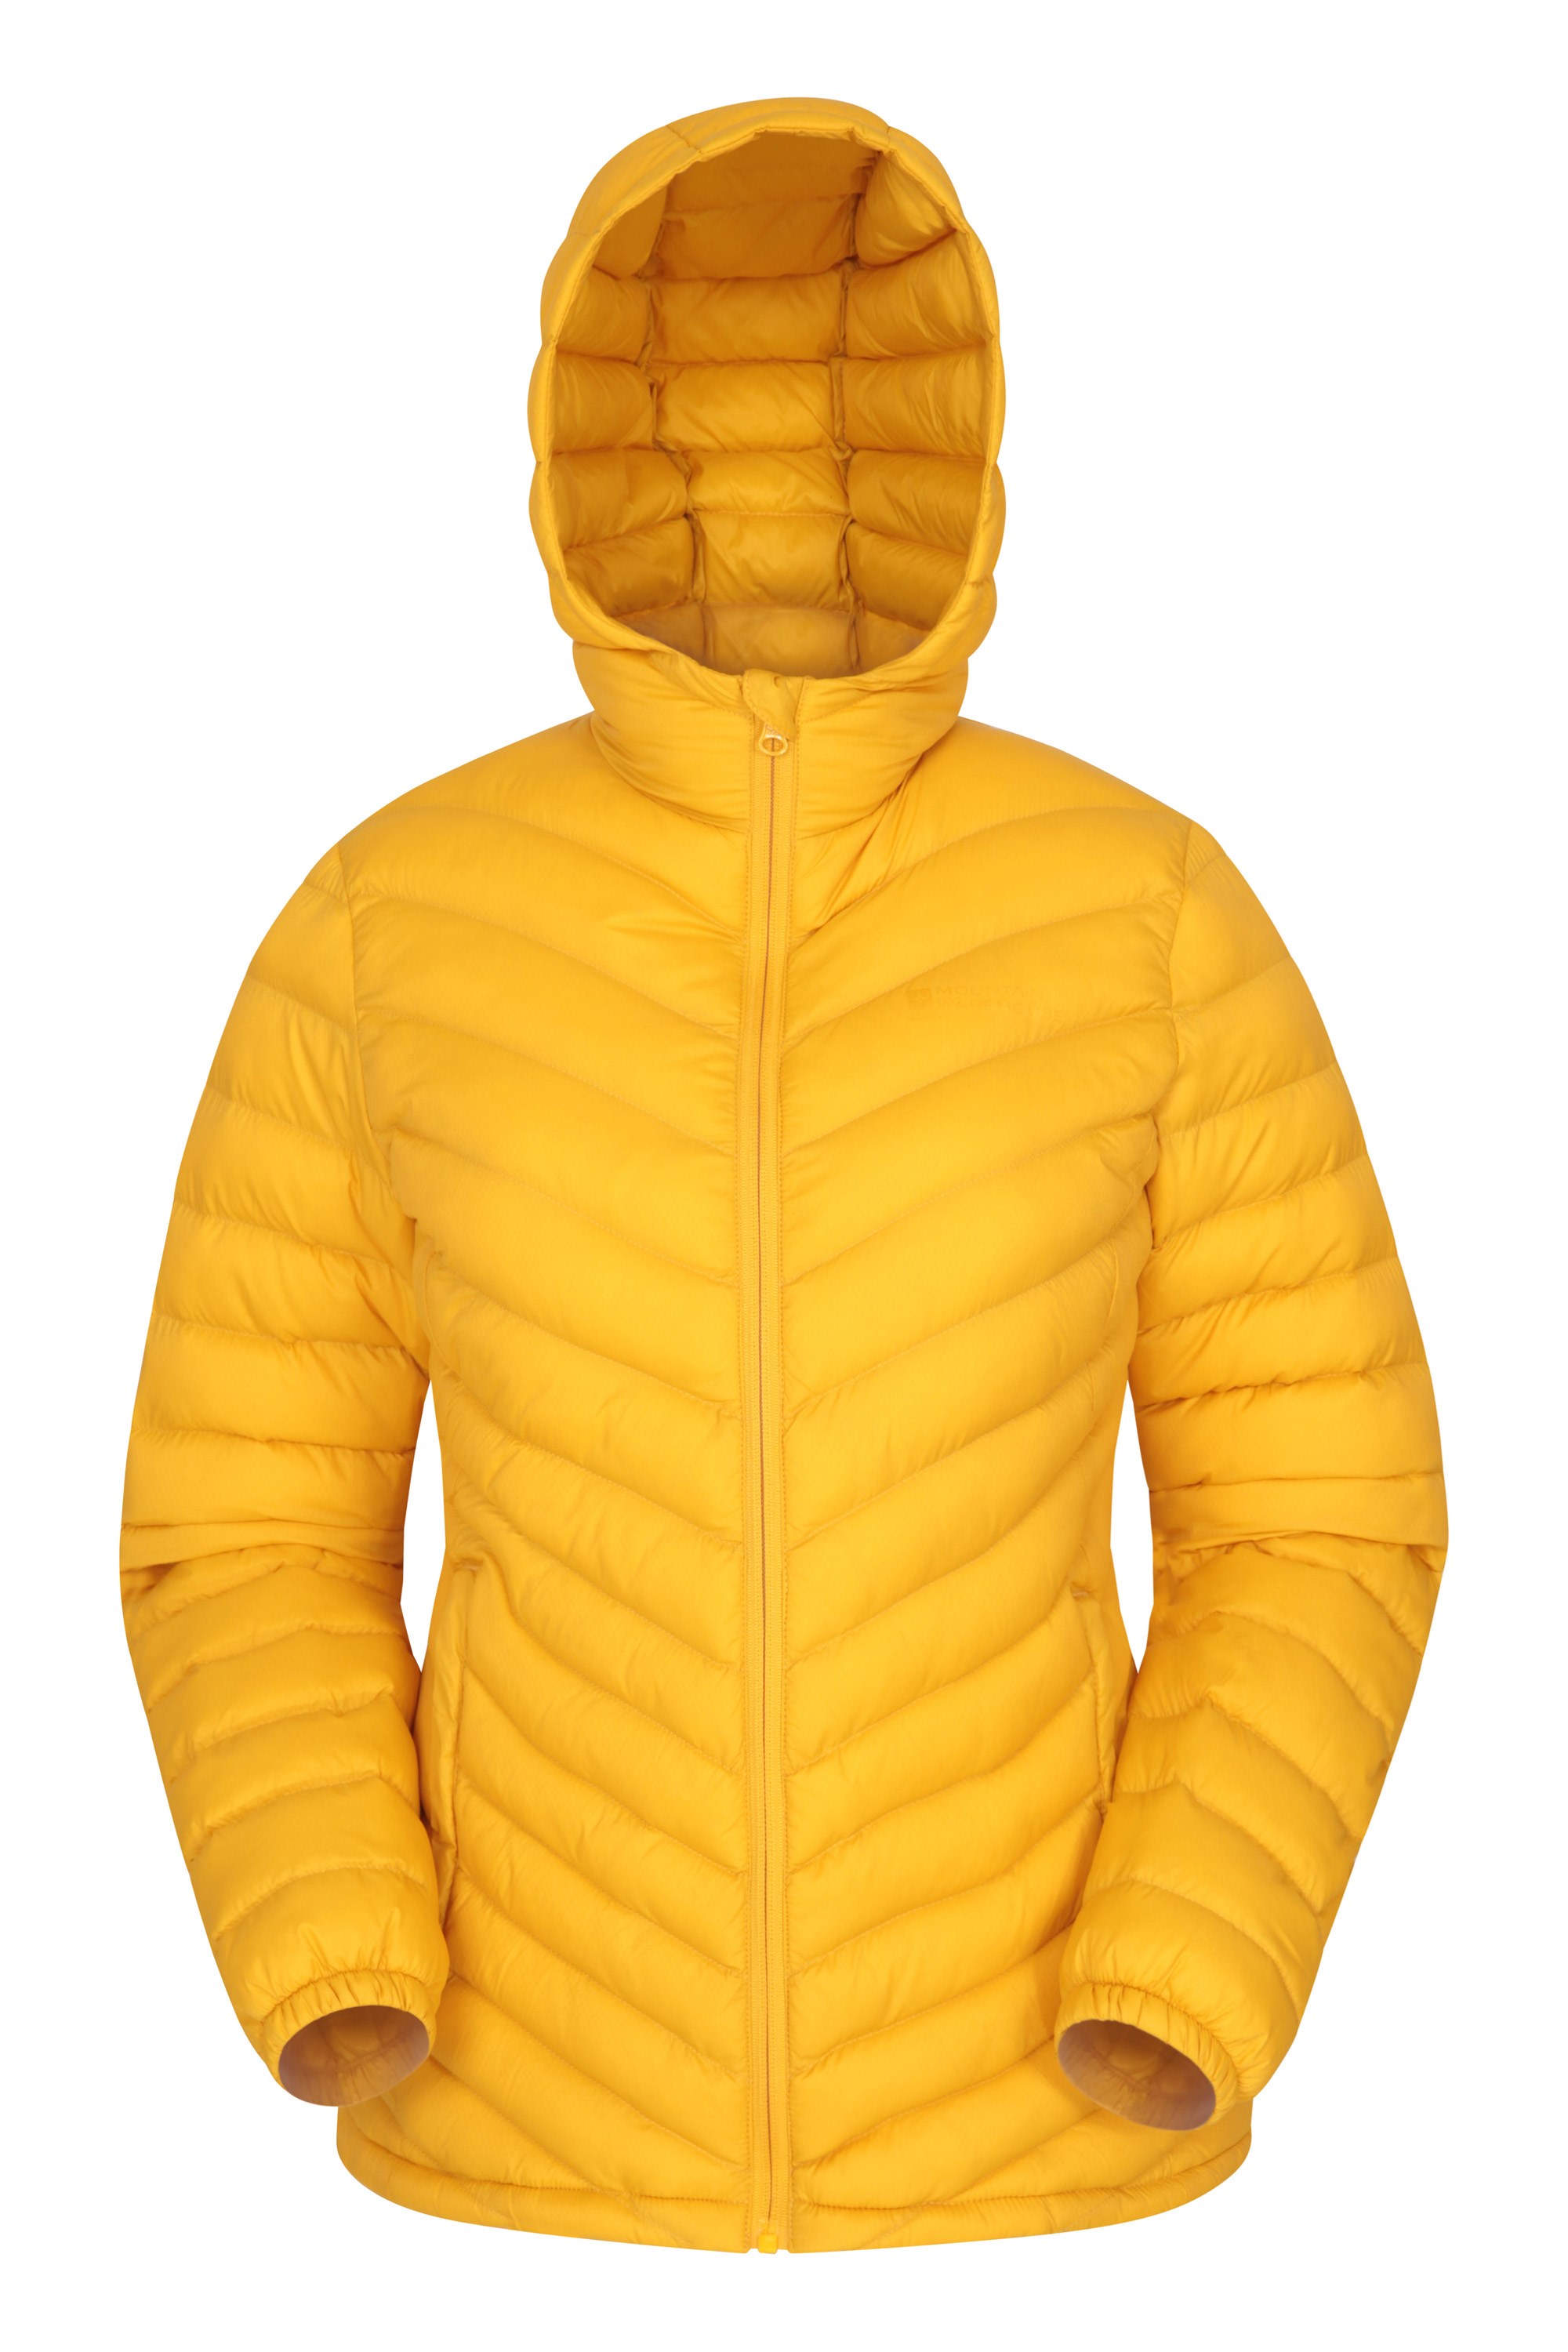 Seasons Womens Padded Jacket - Yellow